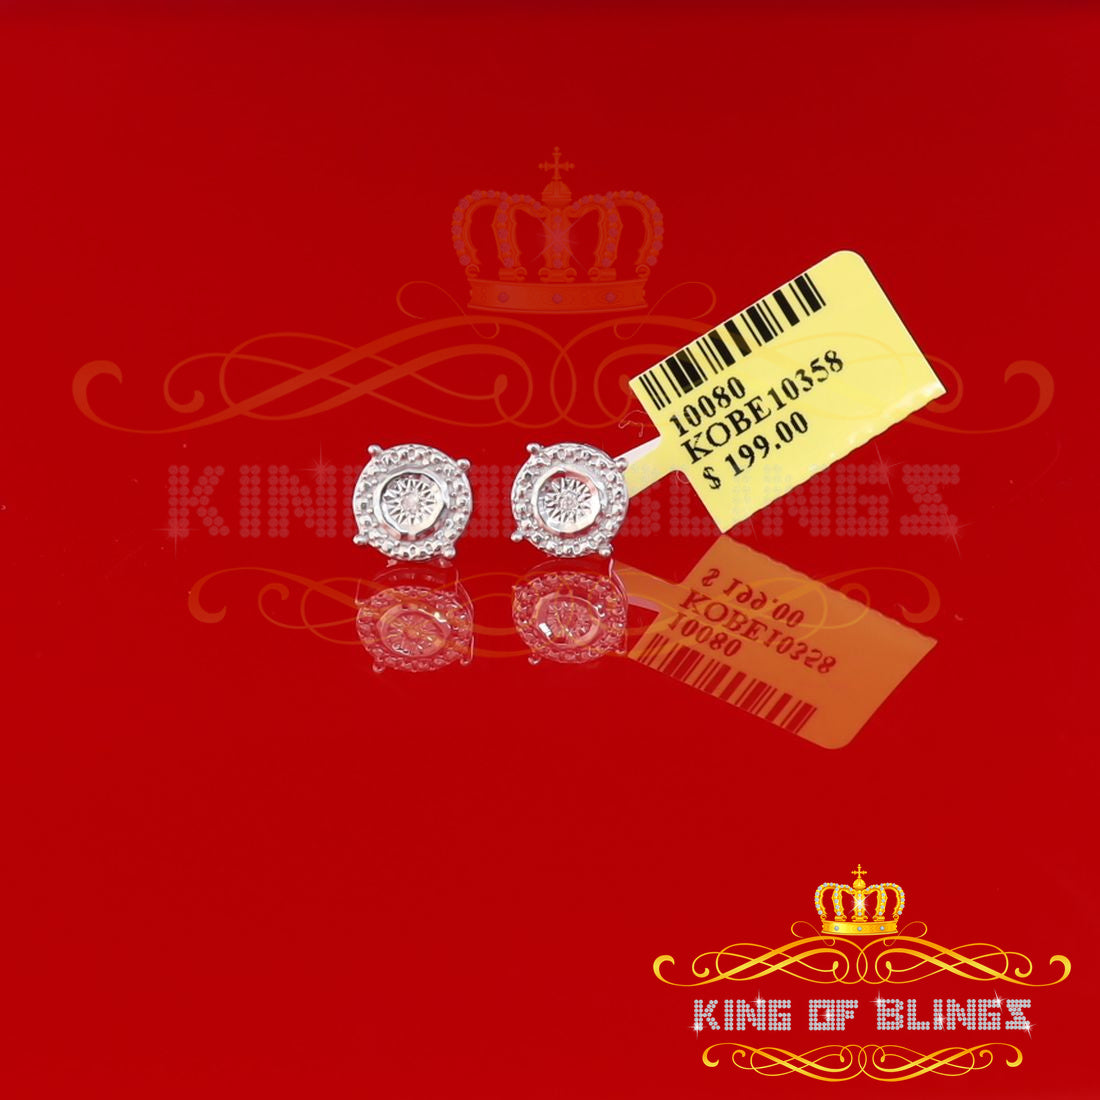 0.01ct Diamond 925 Sterling Silver White For Men's & Women's Stud Round Earring KING OF BLINGS